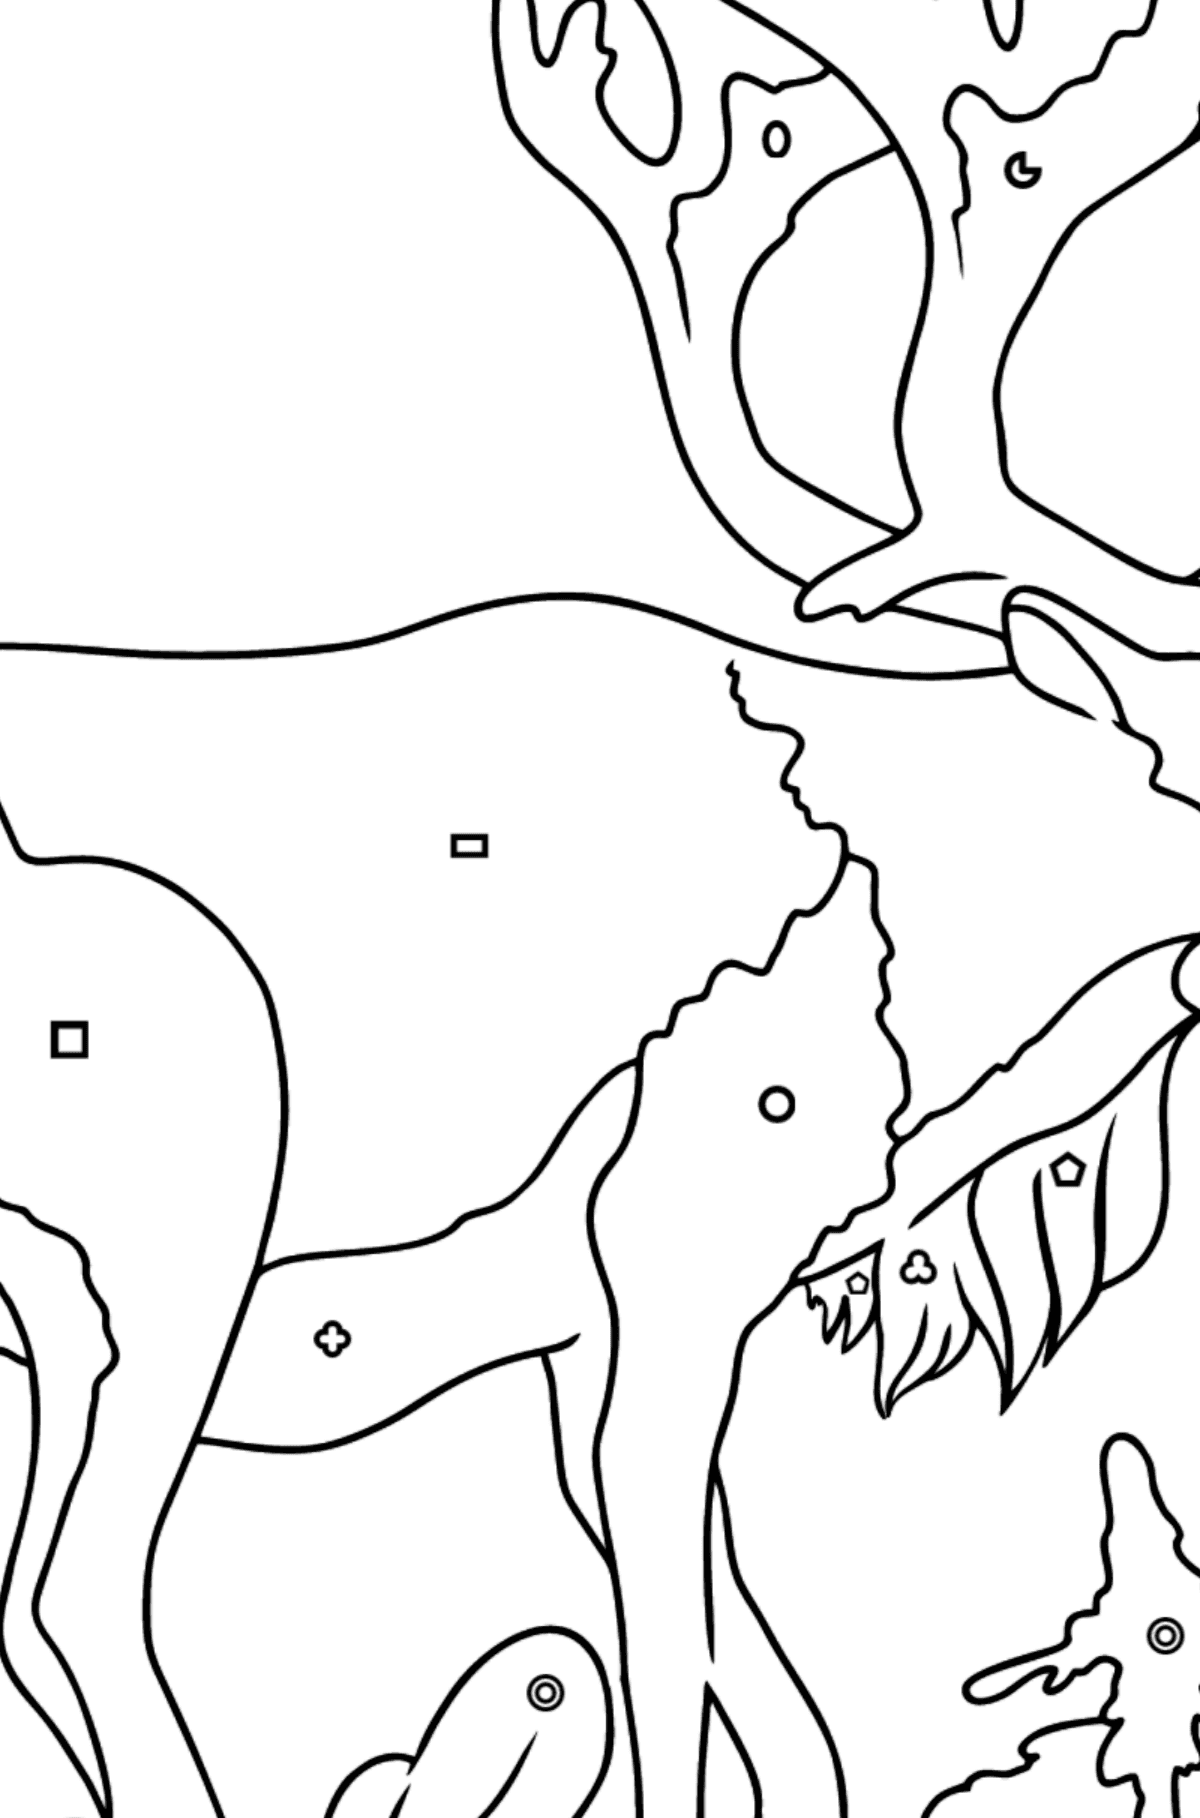 Desenho de cervo para colorir - Colorir por Formas Geométricas para Crianças